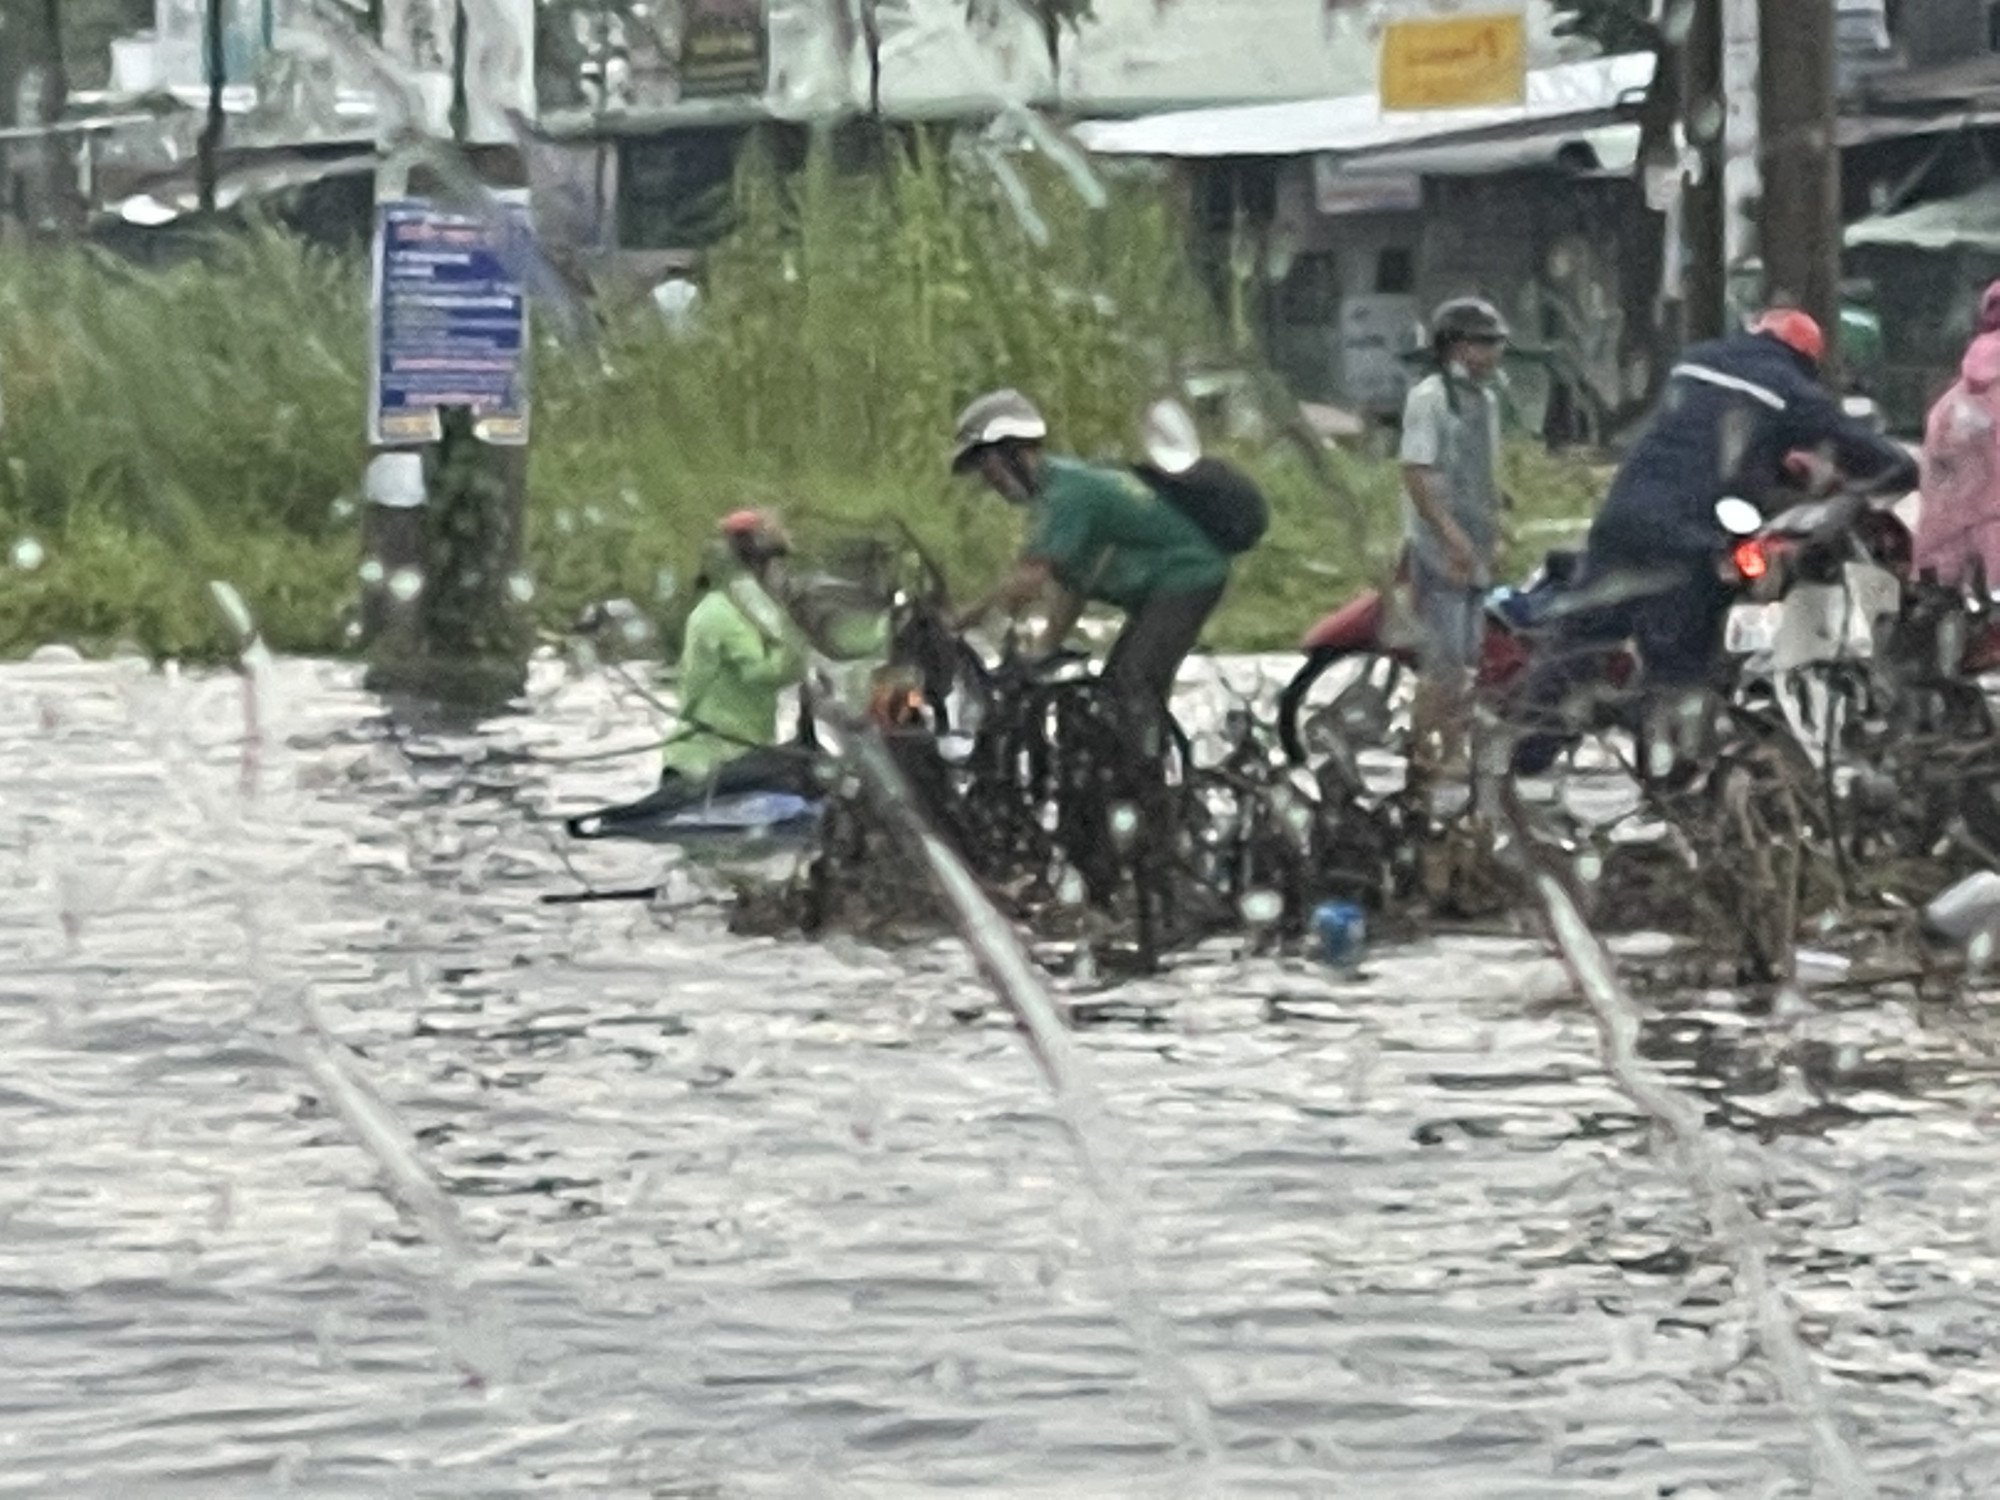 Người phụ nữ này phải chật vật mới dắt bộ được chiếc xe gắn máy ngập sâu trong nước mưa vào lề đường. Một số người dân đang hỗ trợ chị kéo chiếc xe máy lên.